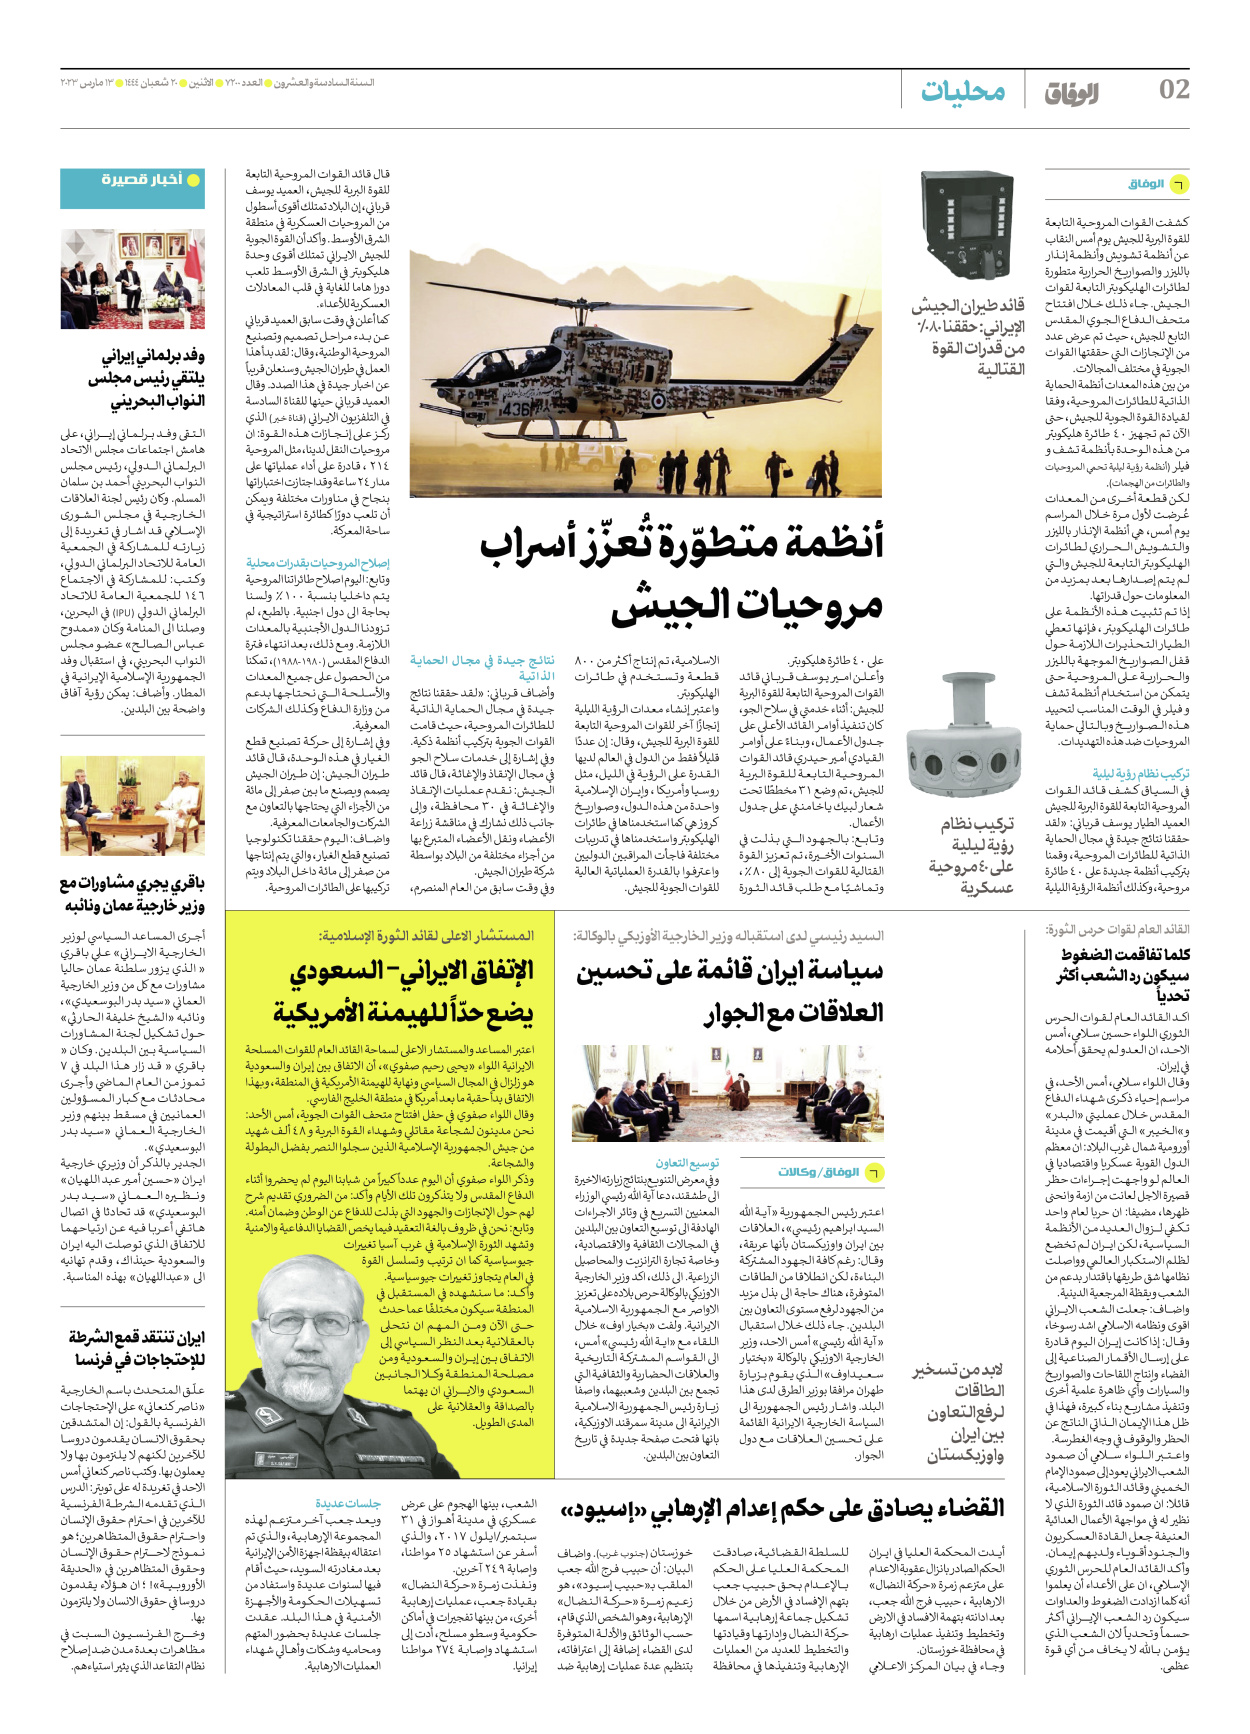 صحیفة ایران الدولیة الوفاق - العدد سبعة آلاف ومائتان - ١٣ مارس ٢٠٢٣ - الصفحة ۲